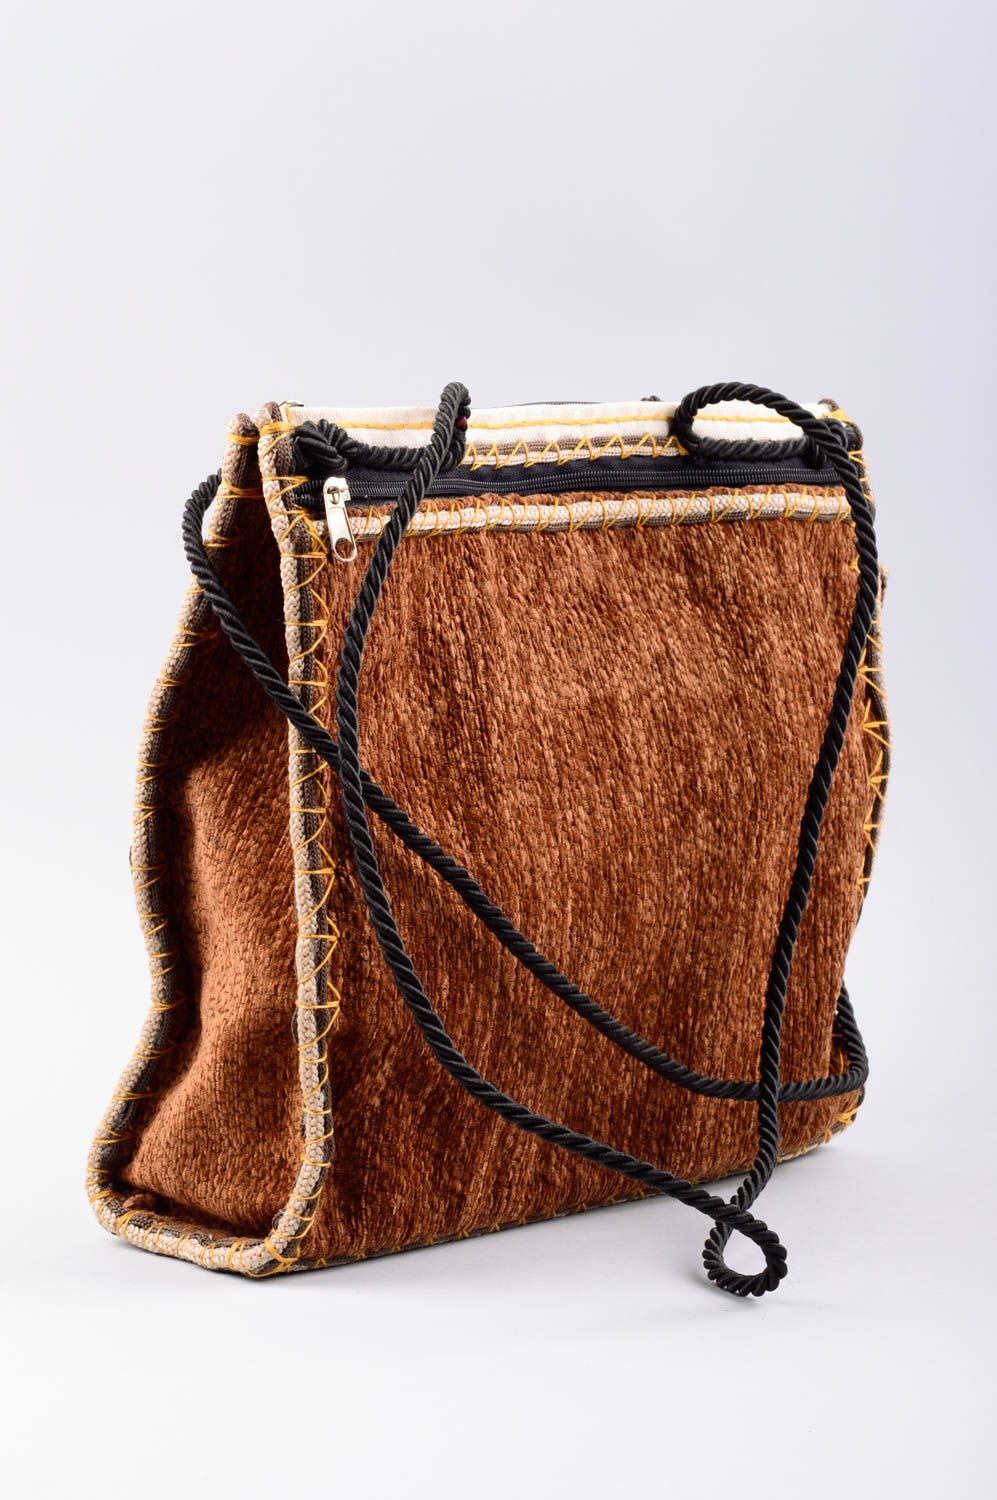 Женская текстильная сумка ручного пошива с длинным ремнем и этническими мотивами фото 2